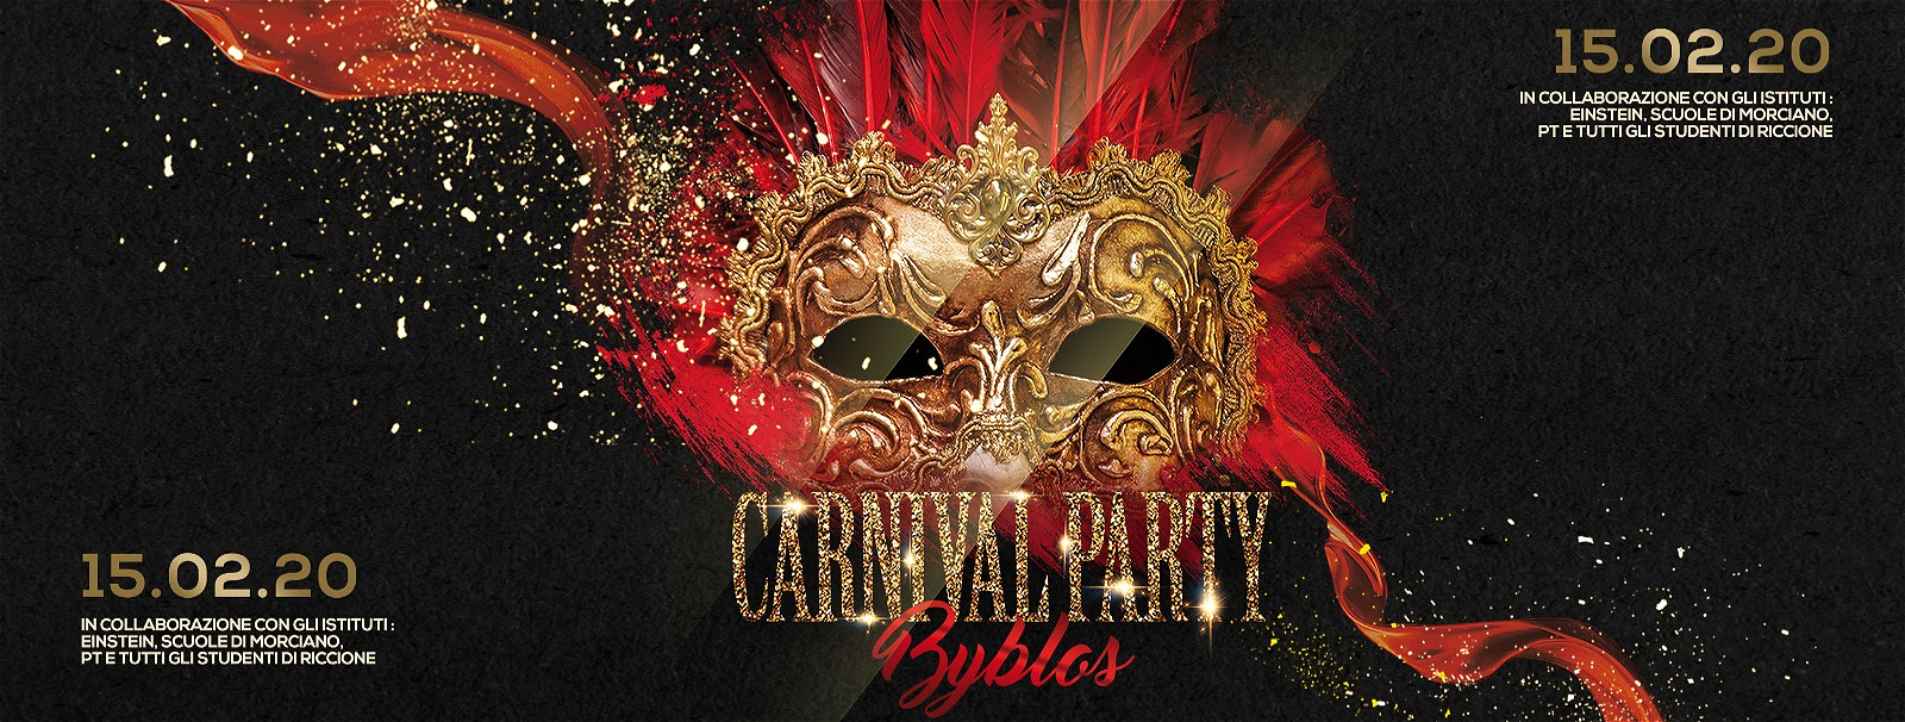 Carnival School Party Byblos Riccione